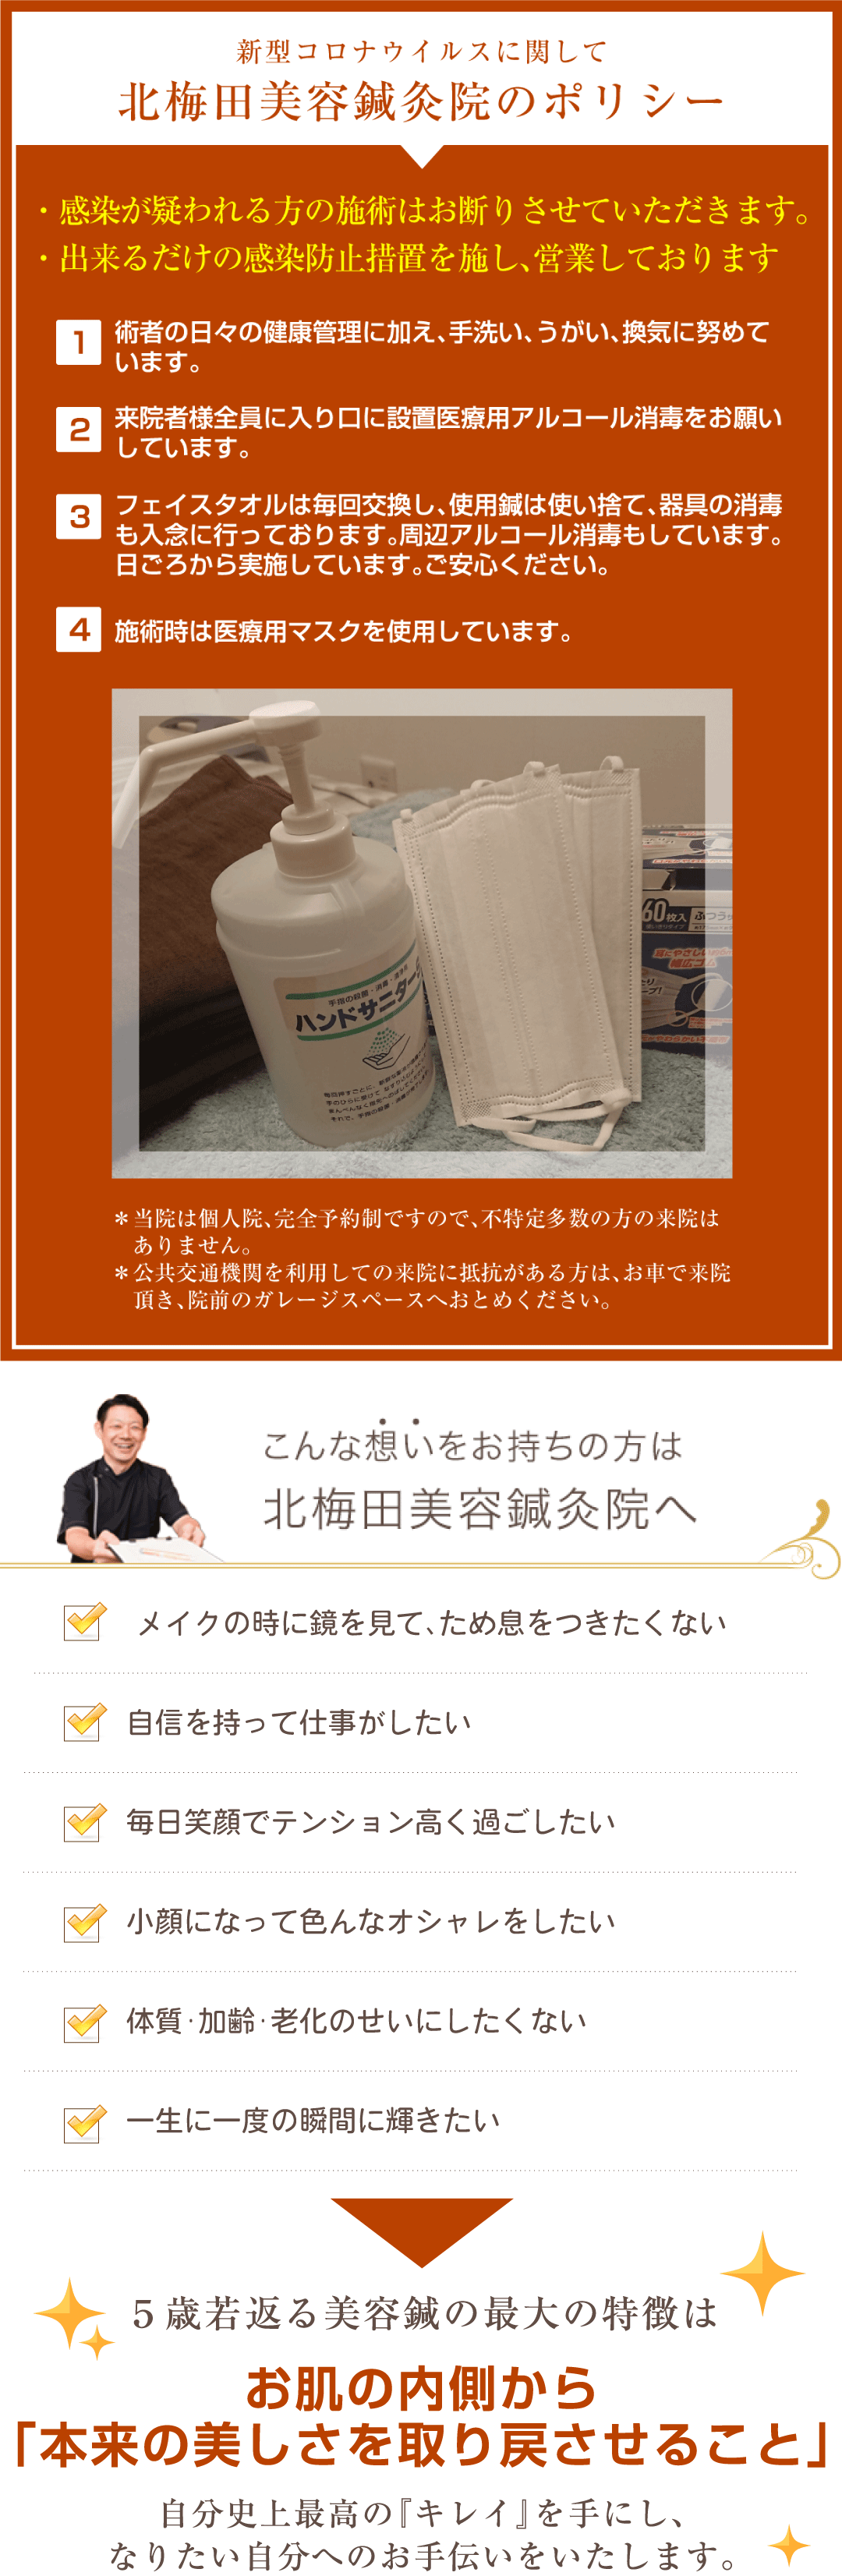 北梅田美容鍼灸院の新型コロナウイルス対策と特徴